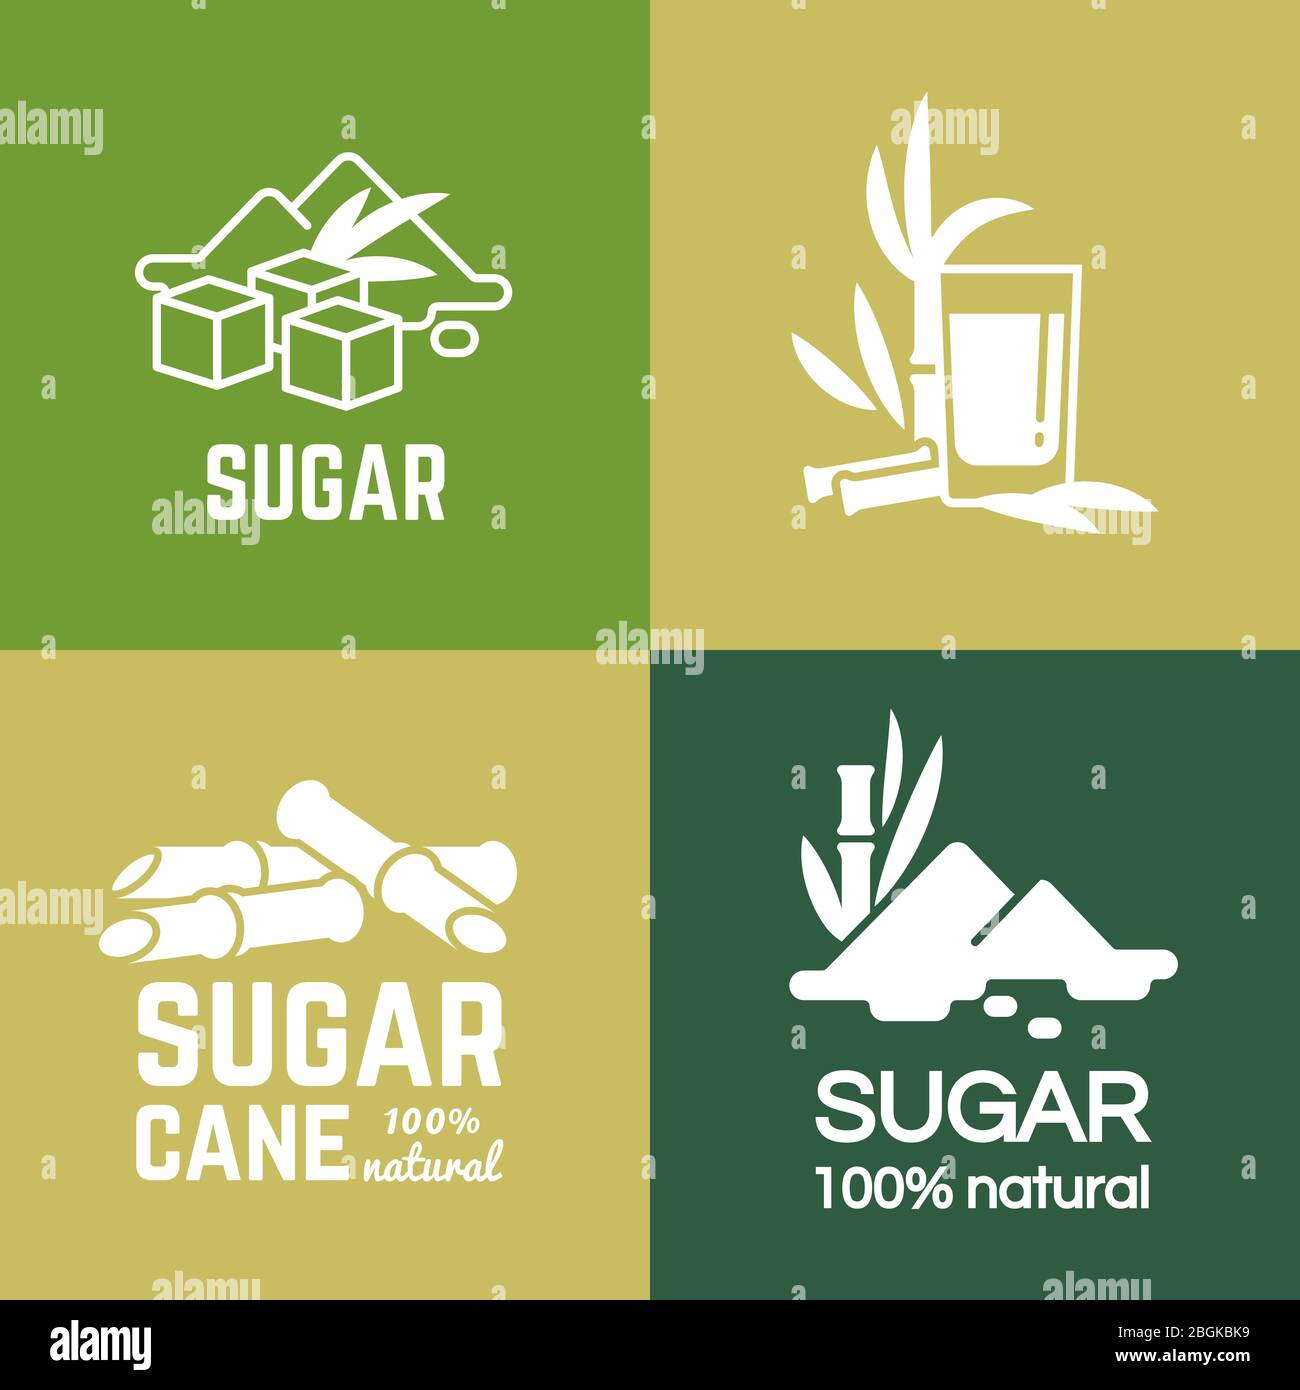 Etiqueta Blanca De Azúcar Logotipo Y Distintivo De La Colección De Ilustración De Diseño 